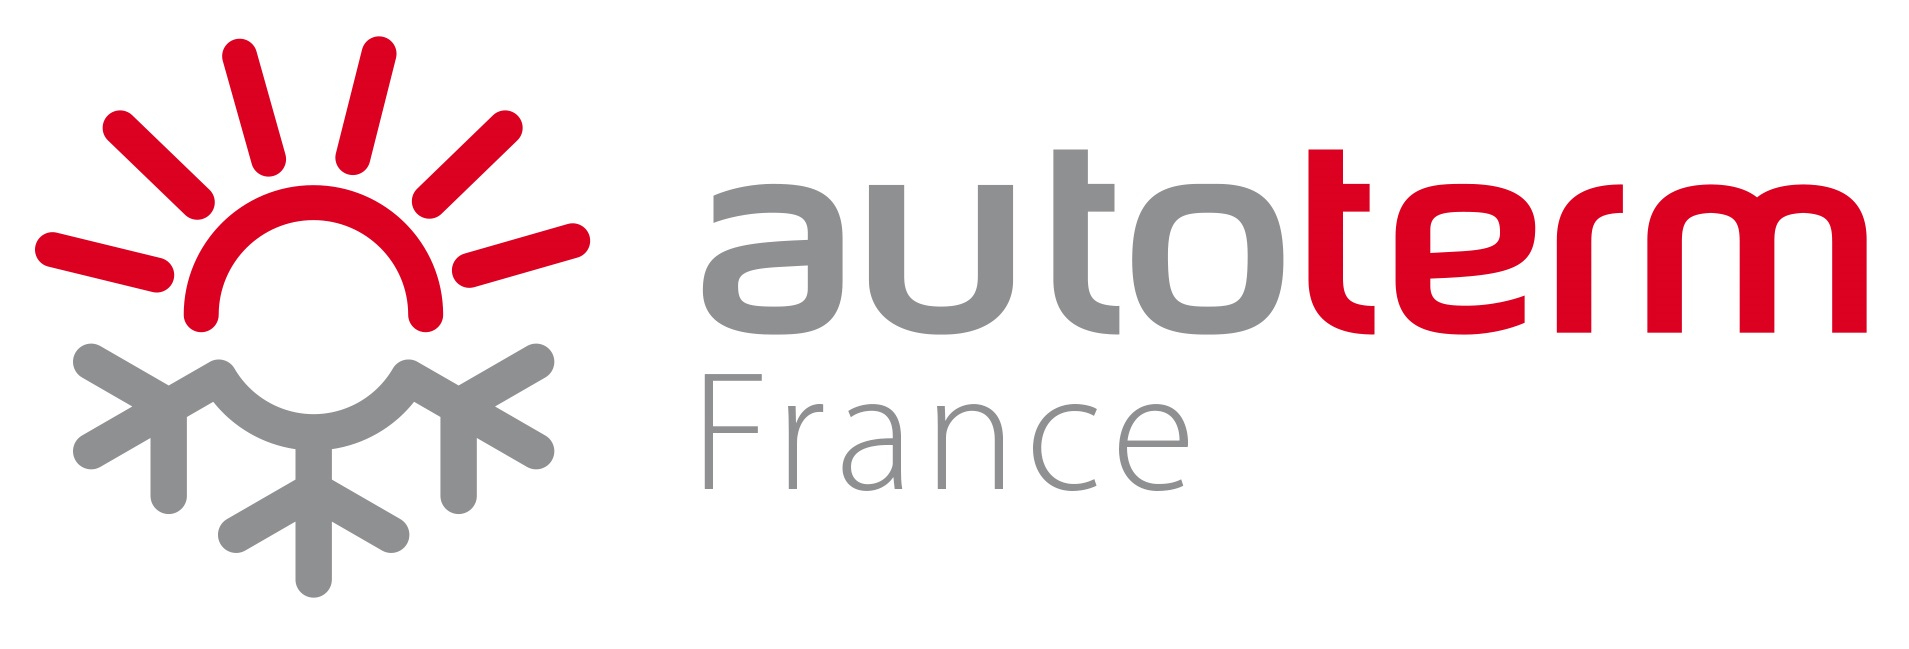 Autoterm France